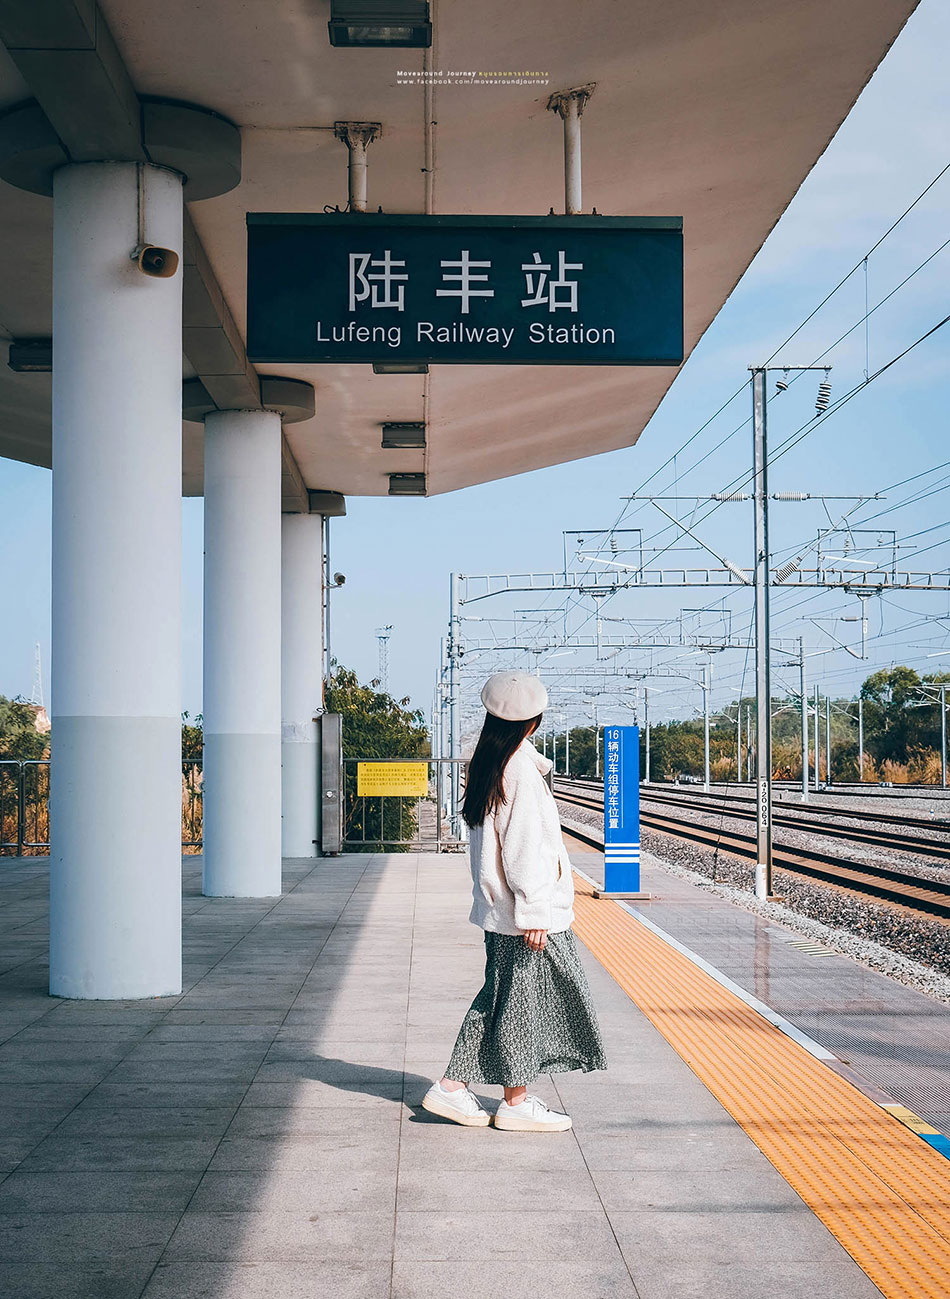 สถานีรถไฟความเร็วสูง Lufeng Station